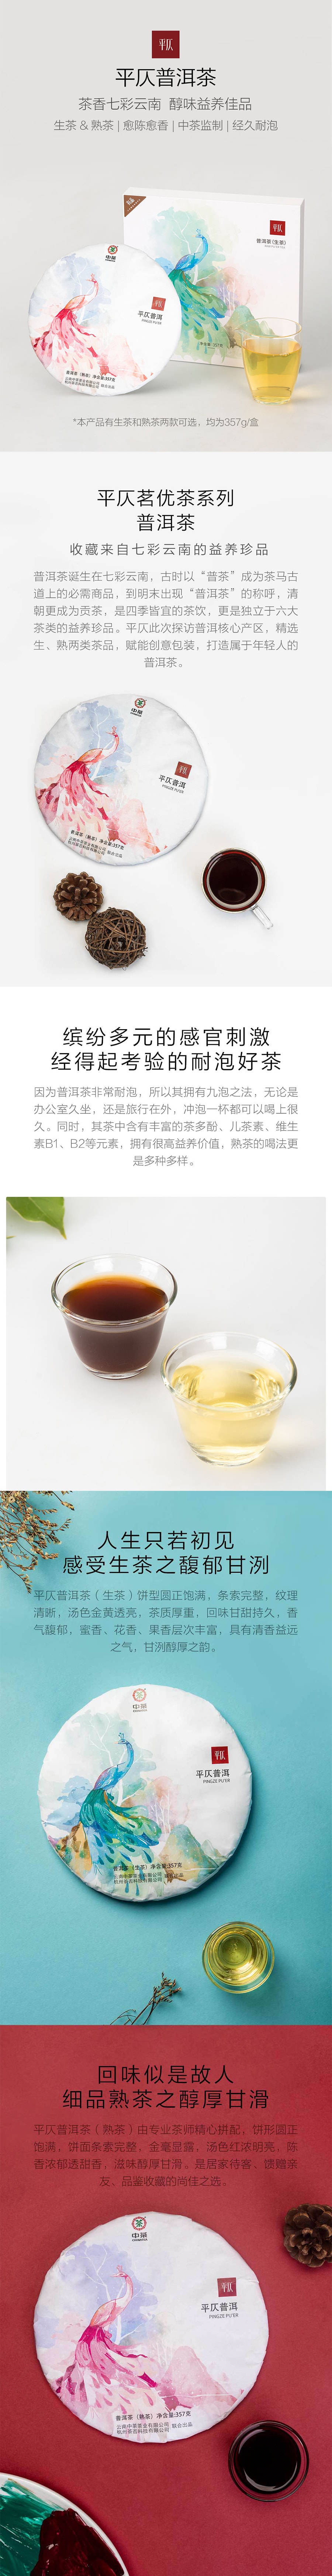 XIAOMI YOUPIN PINGZE PU'ER (fermented tea)357g